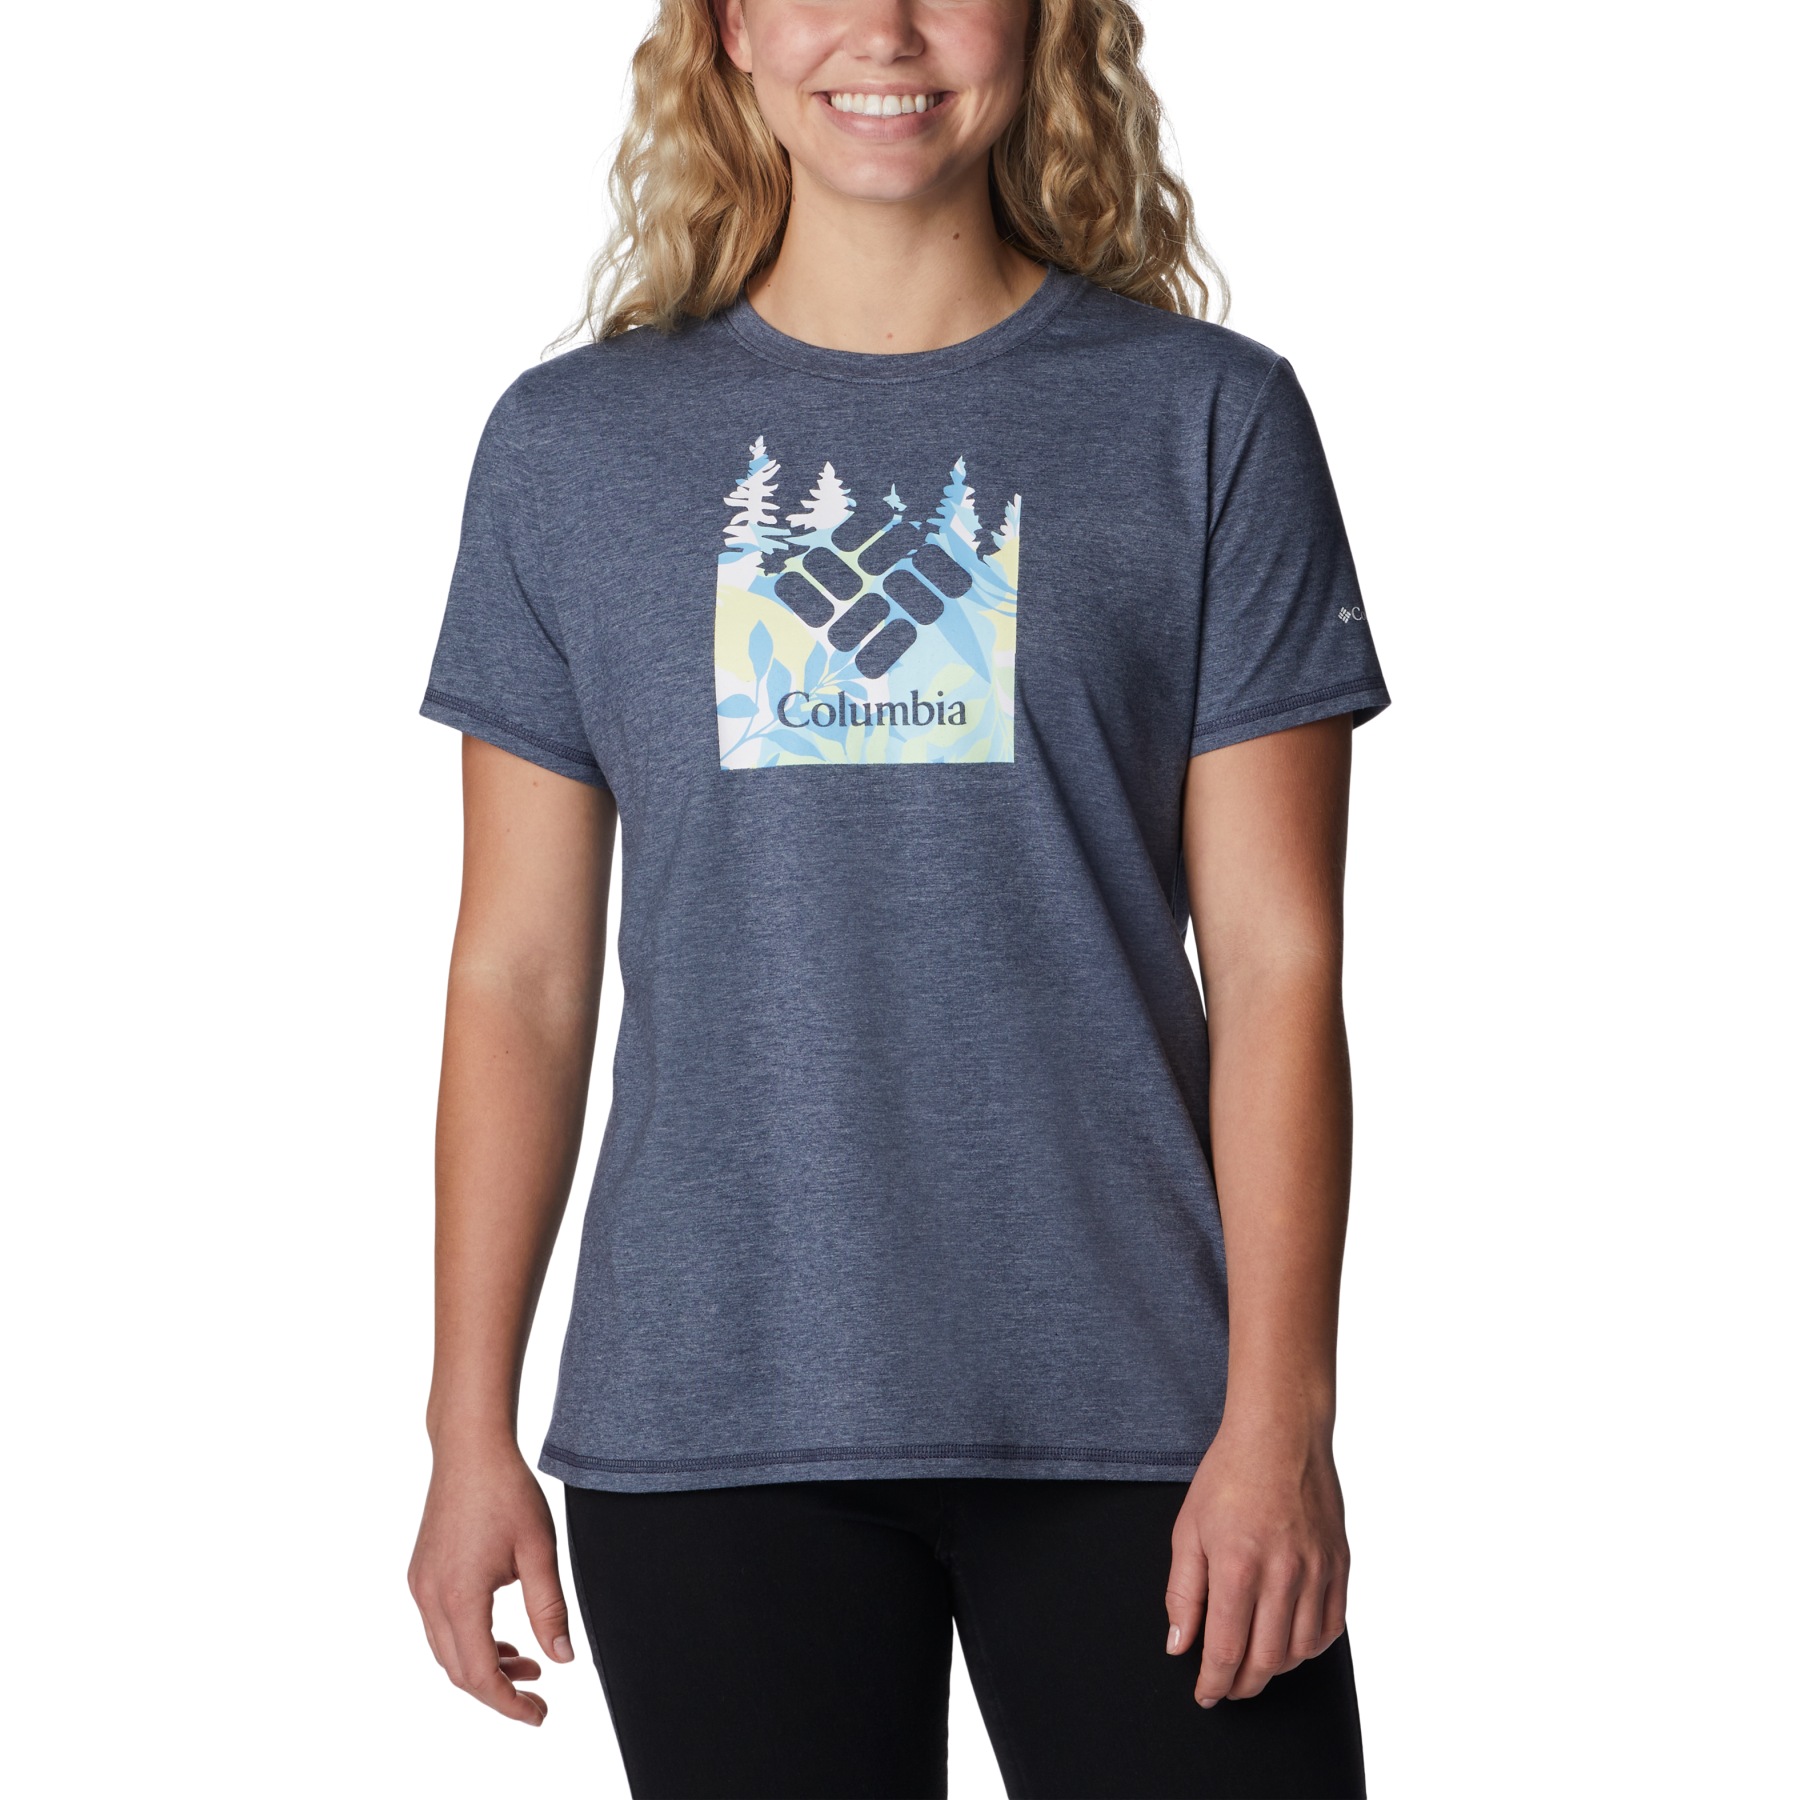 Produktbild von Columbia Sun Trek Graphic T-Shirt Damen - Nocturnal/Arboreal Swirl Graphic